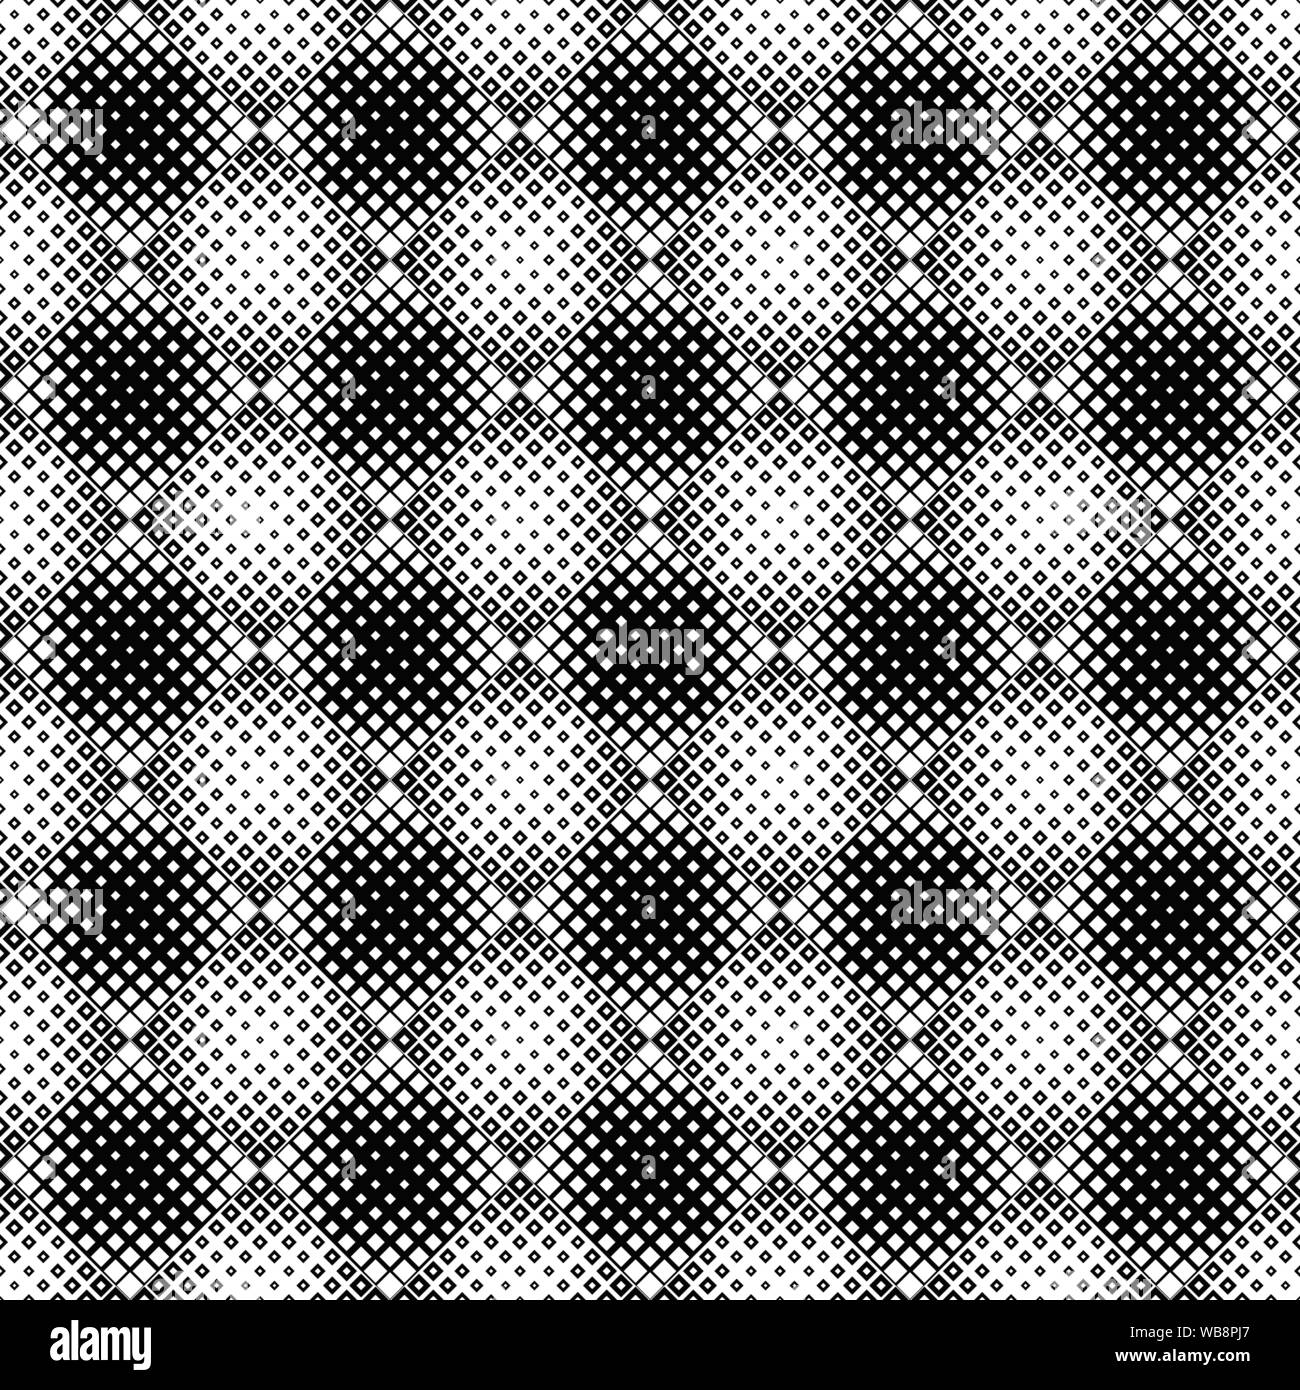 Nahtlose schwarzen und weißen rechteckigen Muster Hintergrund - wiederkehrende geometrische abstrakte Vector Graphic Design Stock Vektor